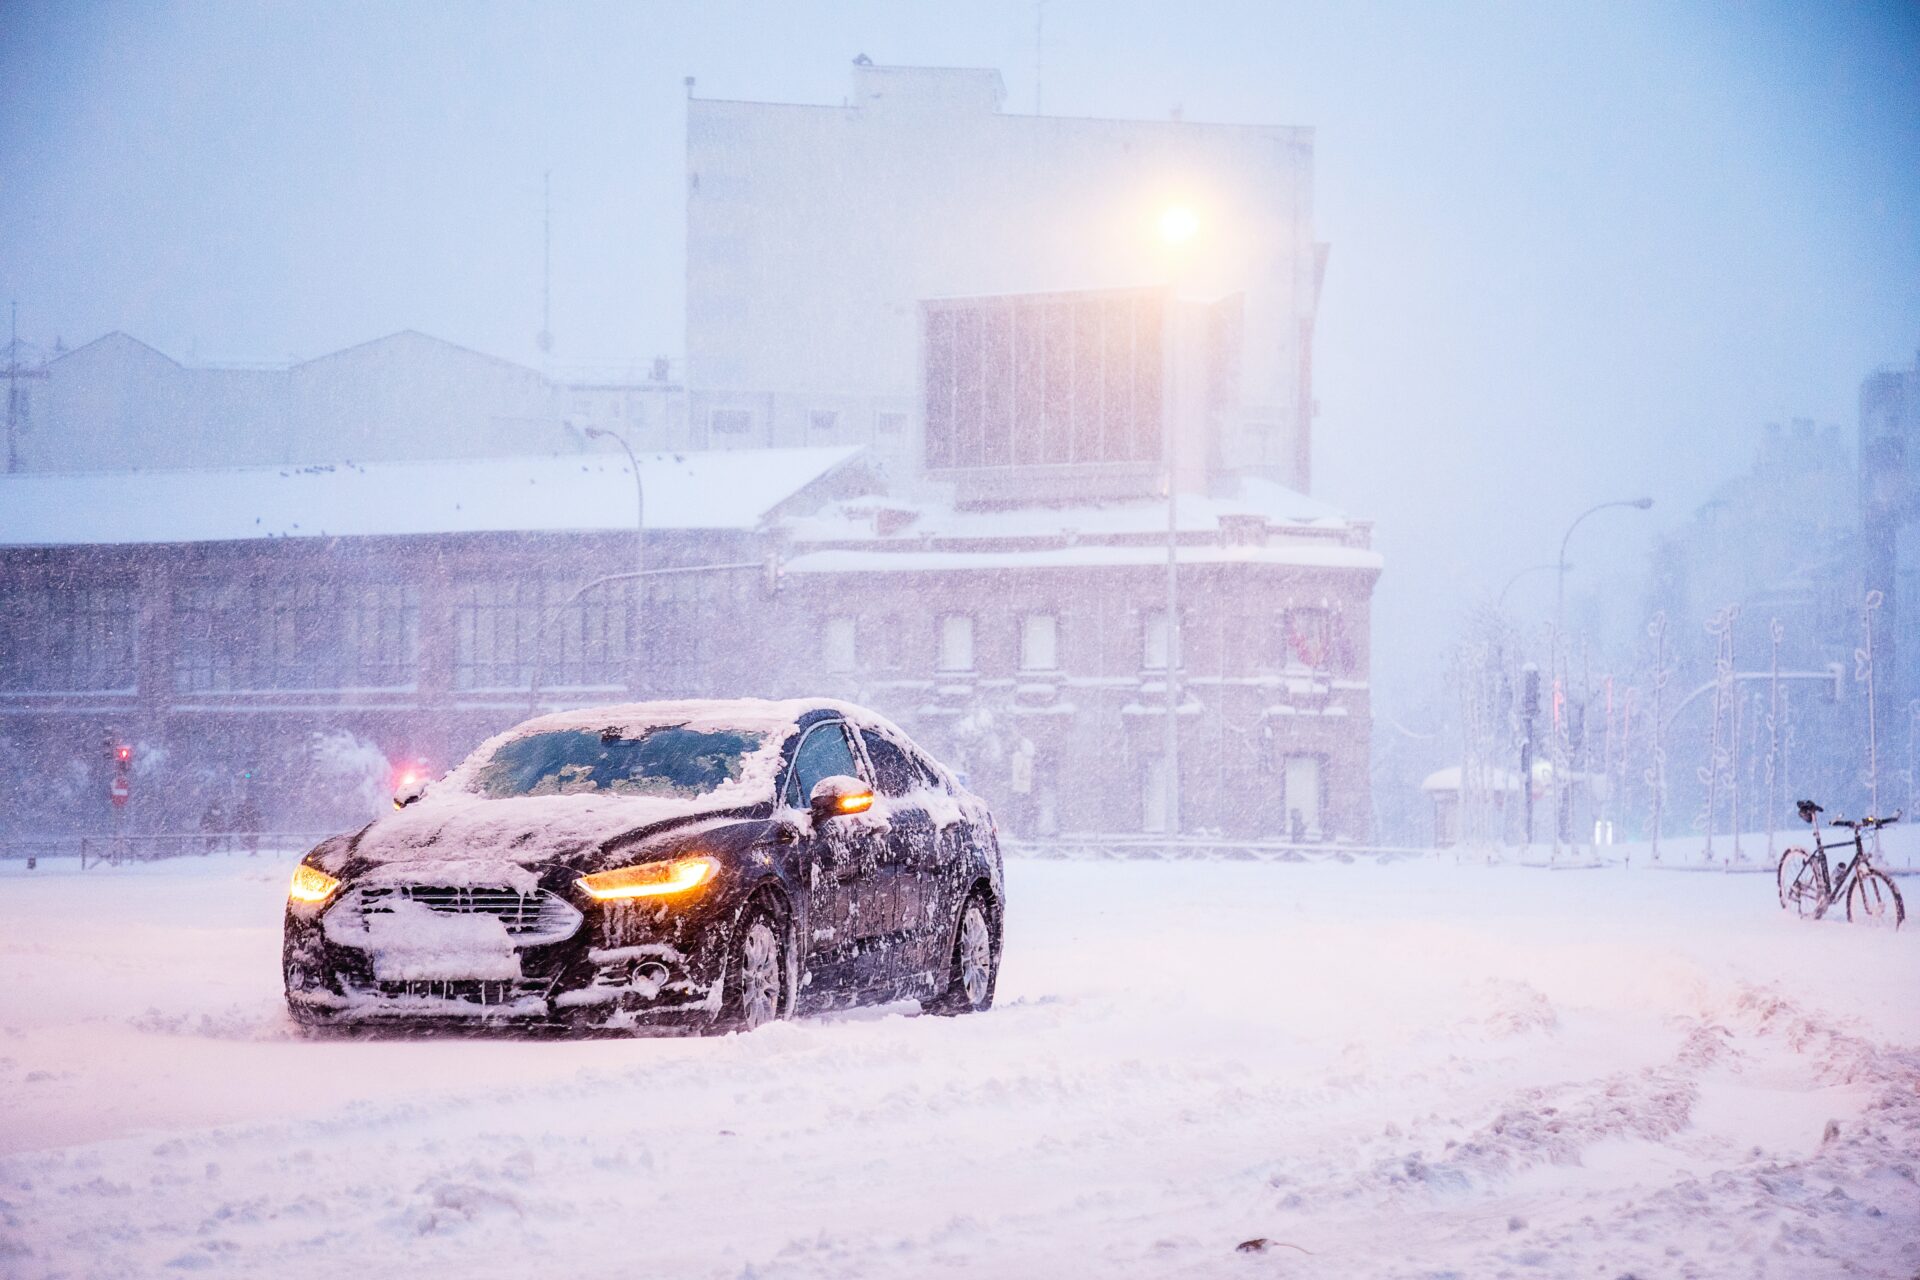 РБК: Автосервисы рассказали о 5 главных проблемах китайских авто в зимний период